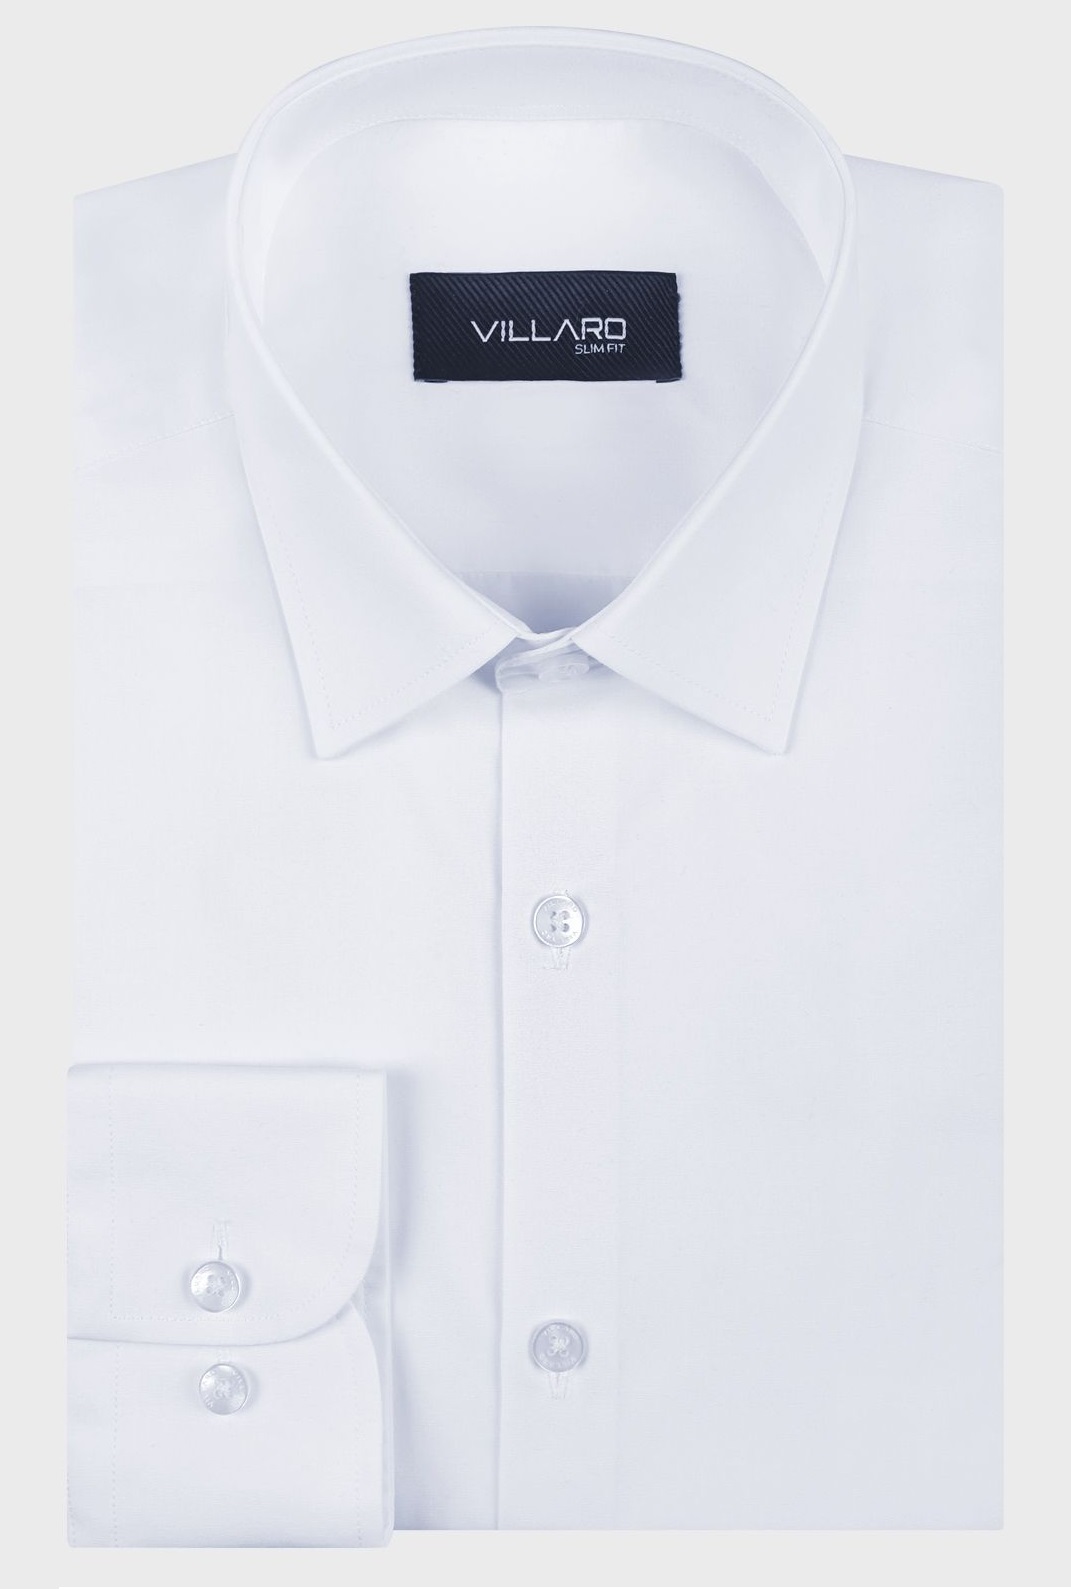 Pánská košile dlouhý rukáv VILLARO by MMER 01LDSB Slim Fit ZKRÁCENÁ Velikost: 40 na výška cca 164/170